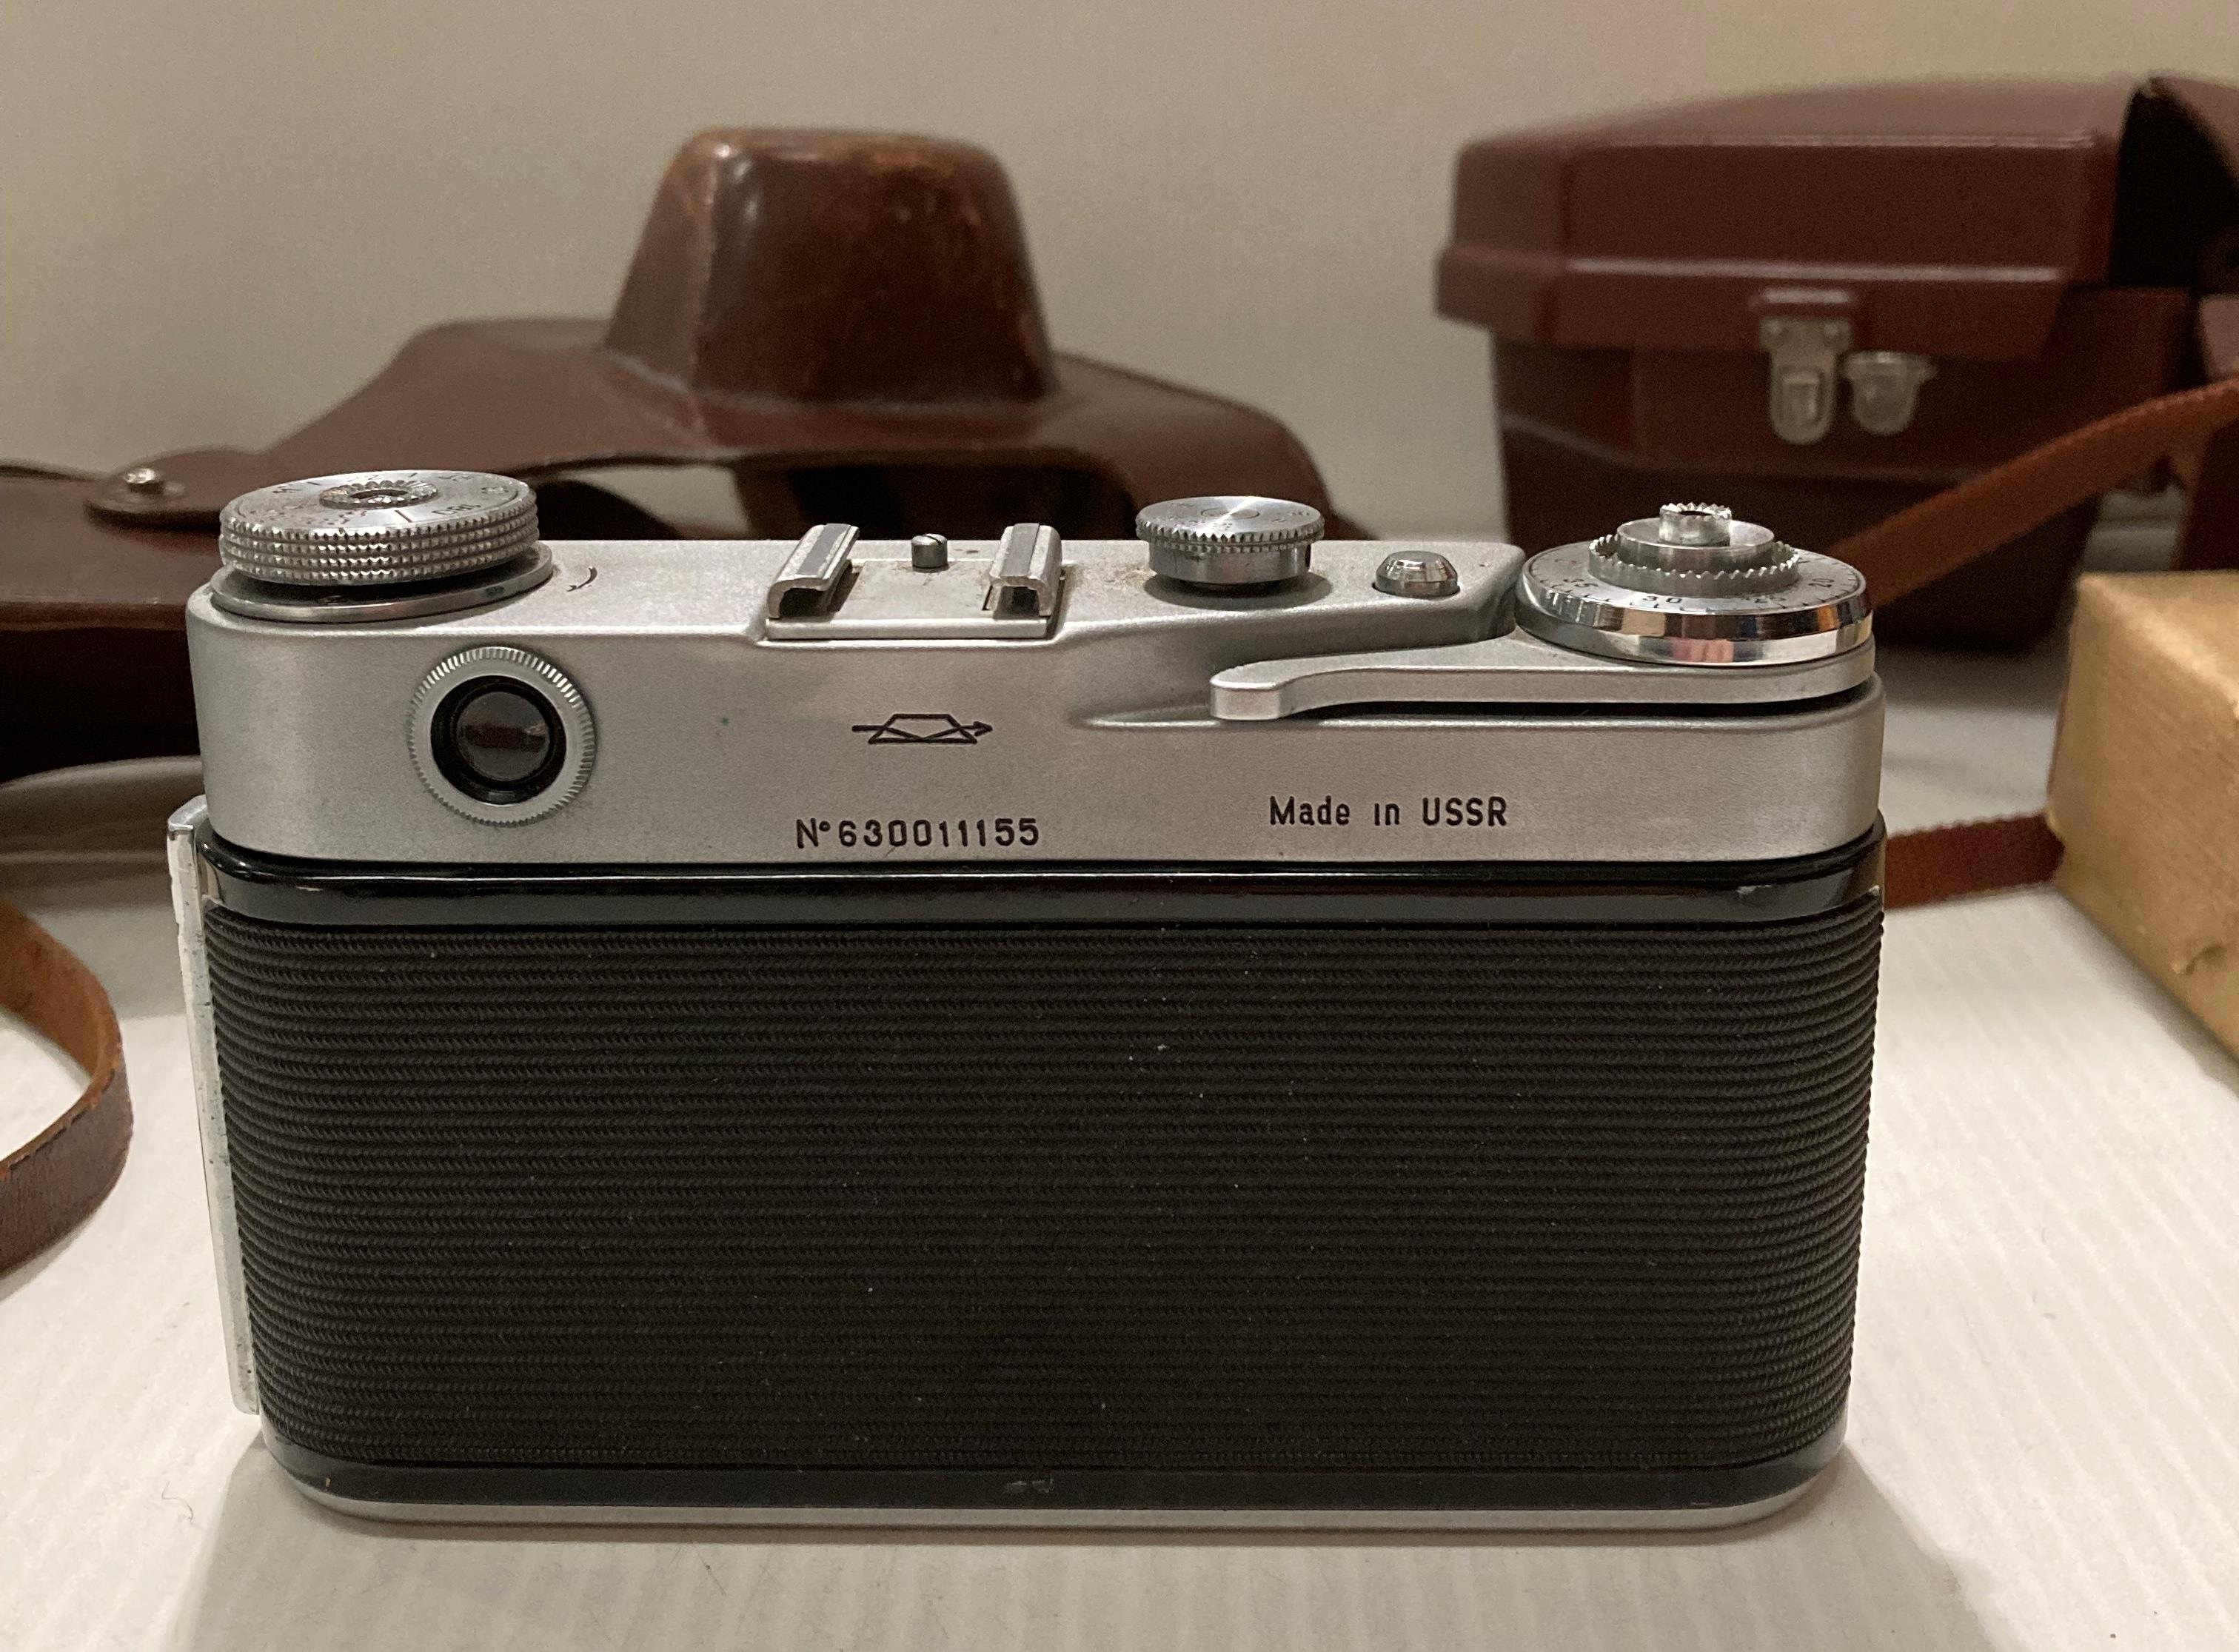 A Kodak Spool camera model 300m reflex F 1.6 in case, a 'Bolco' condenser lens and a Zorki 6 F 3. - Image 9 of 10